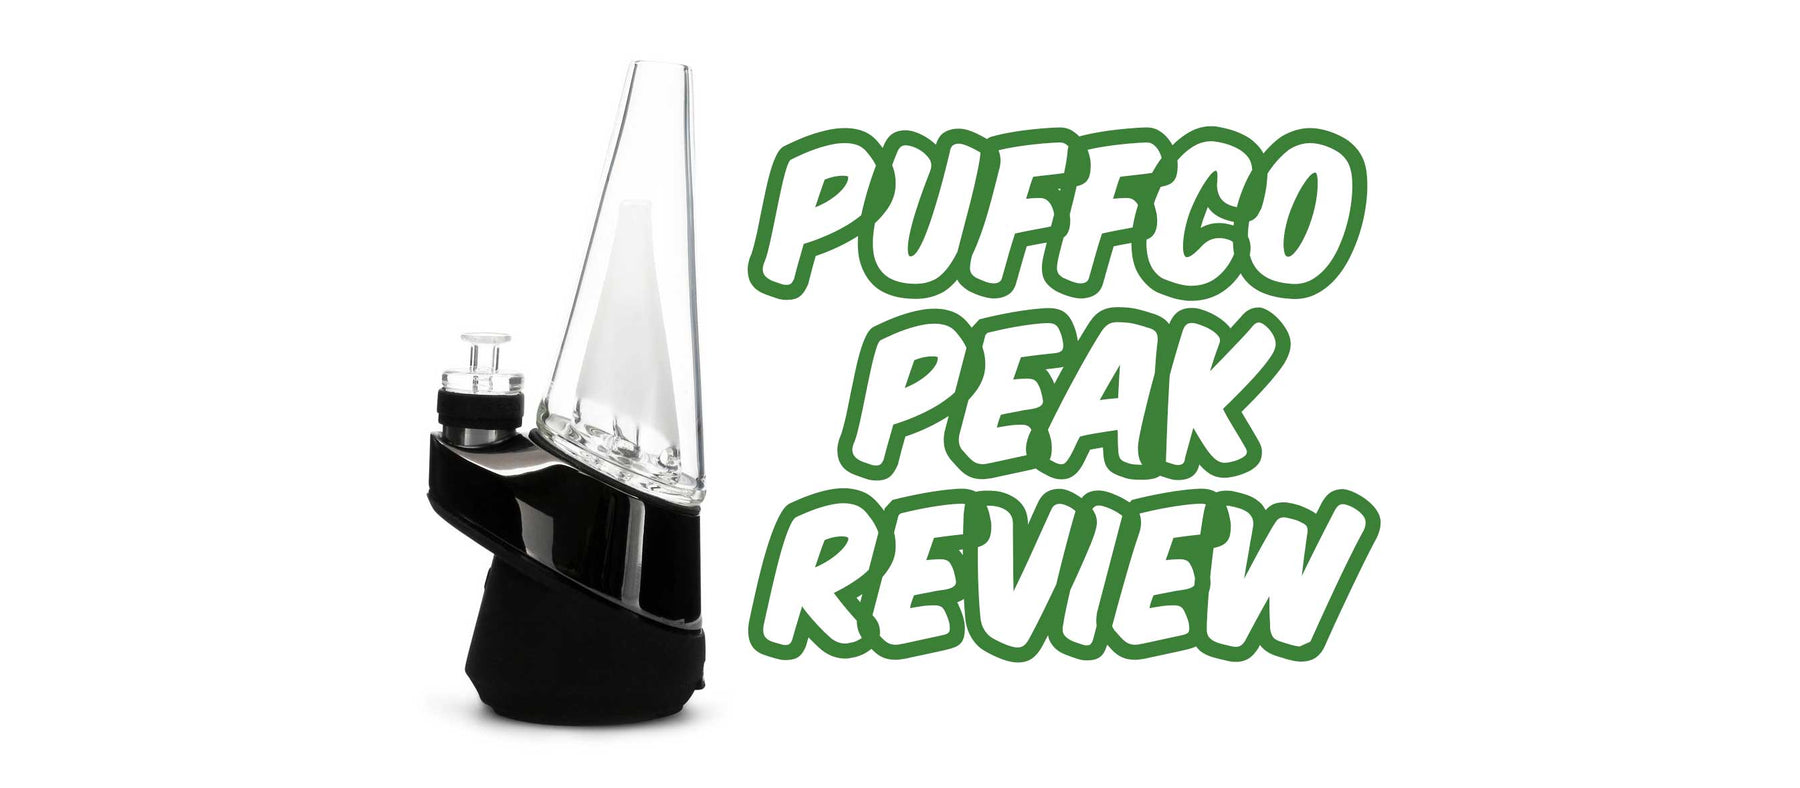 Puffco Peak Review